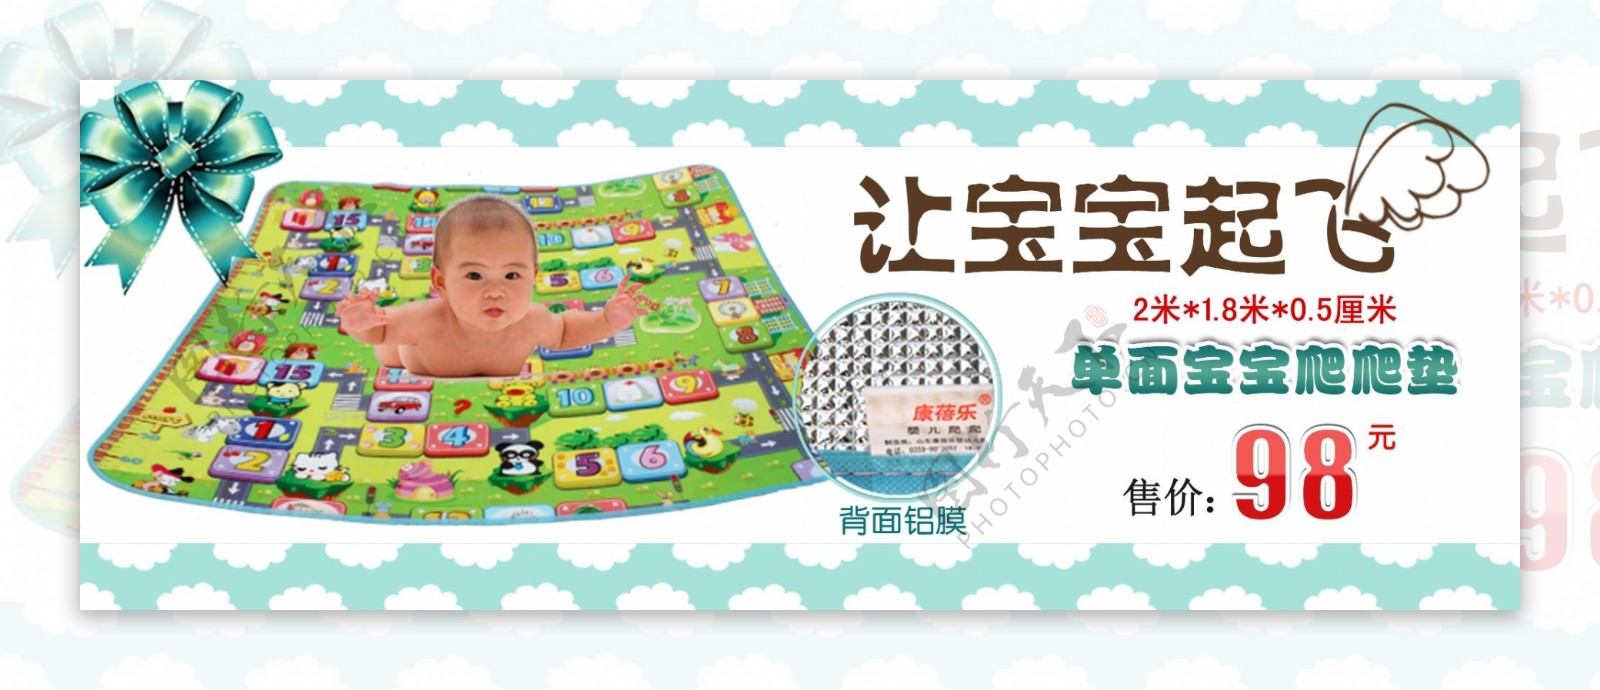 淘宝婴幼儿用品尿布海报设计